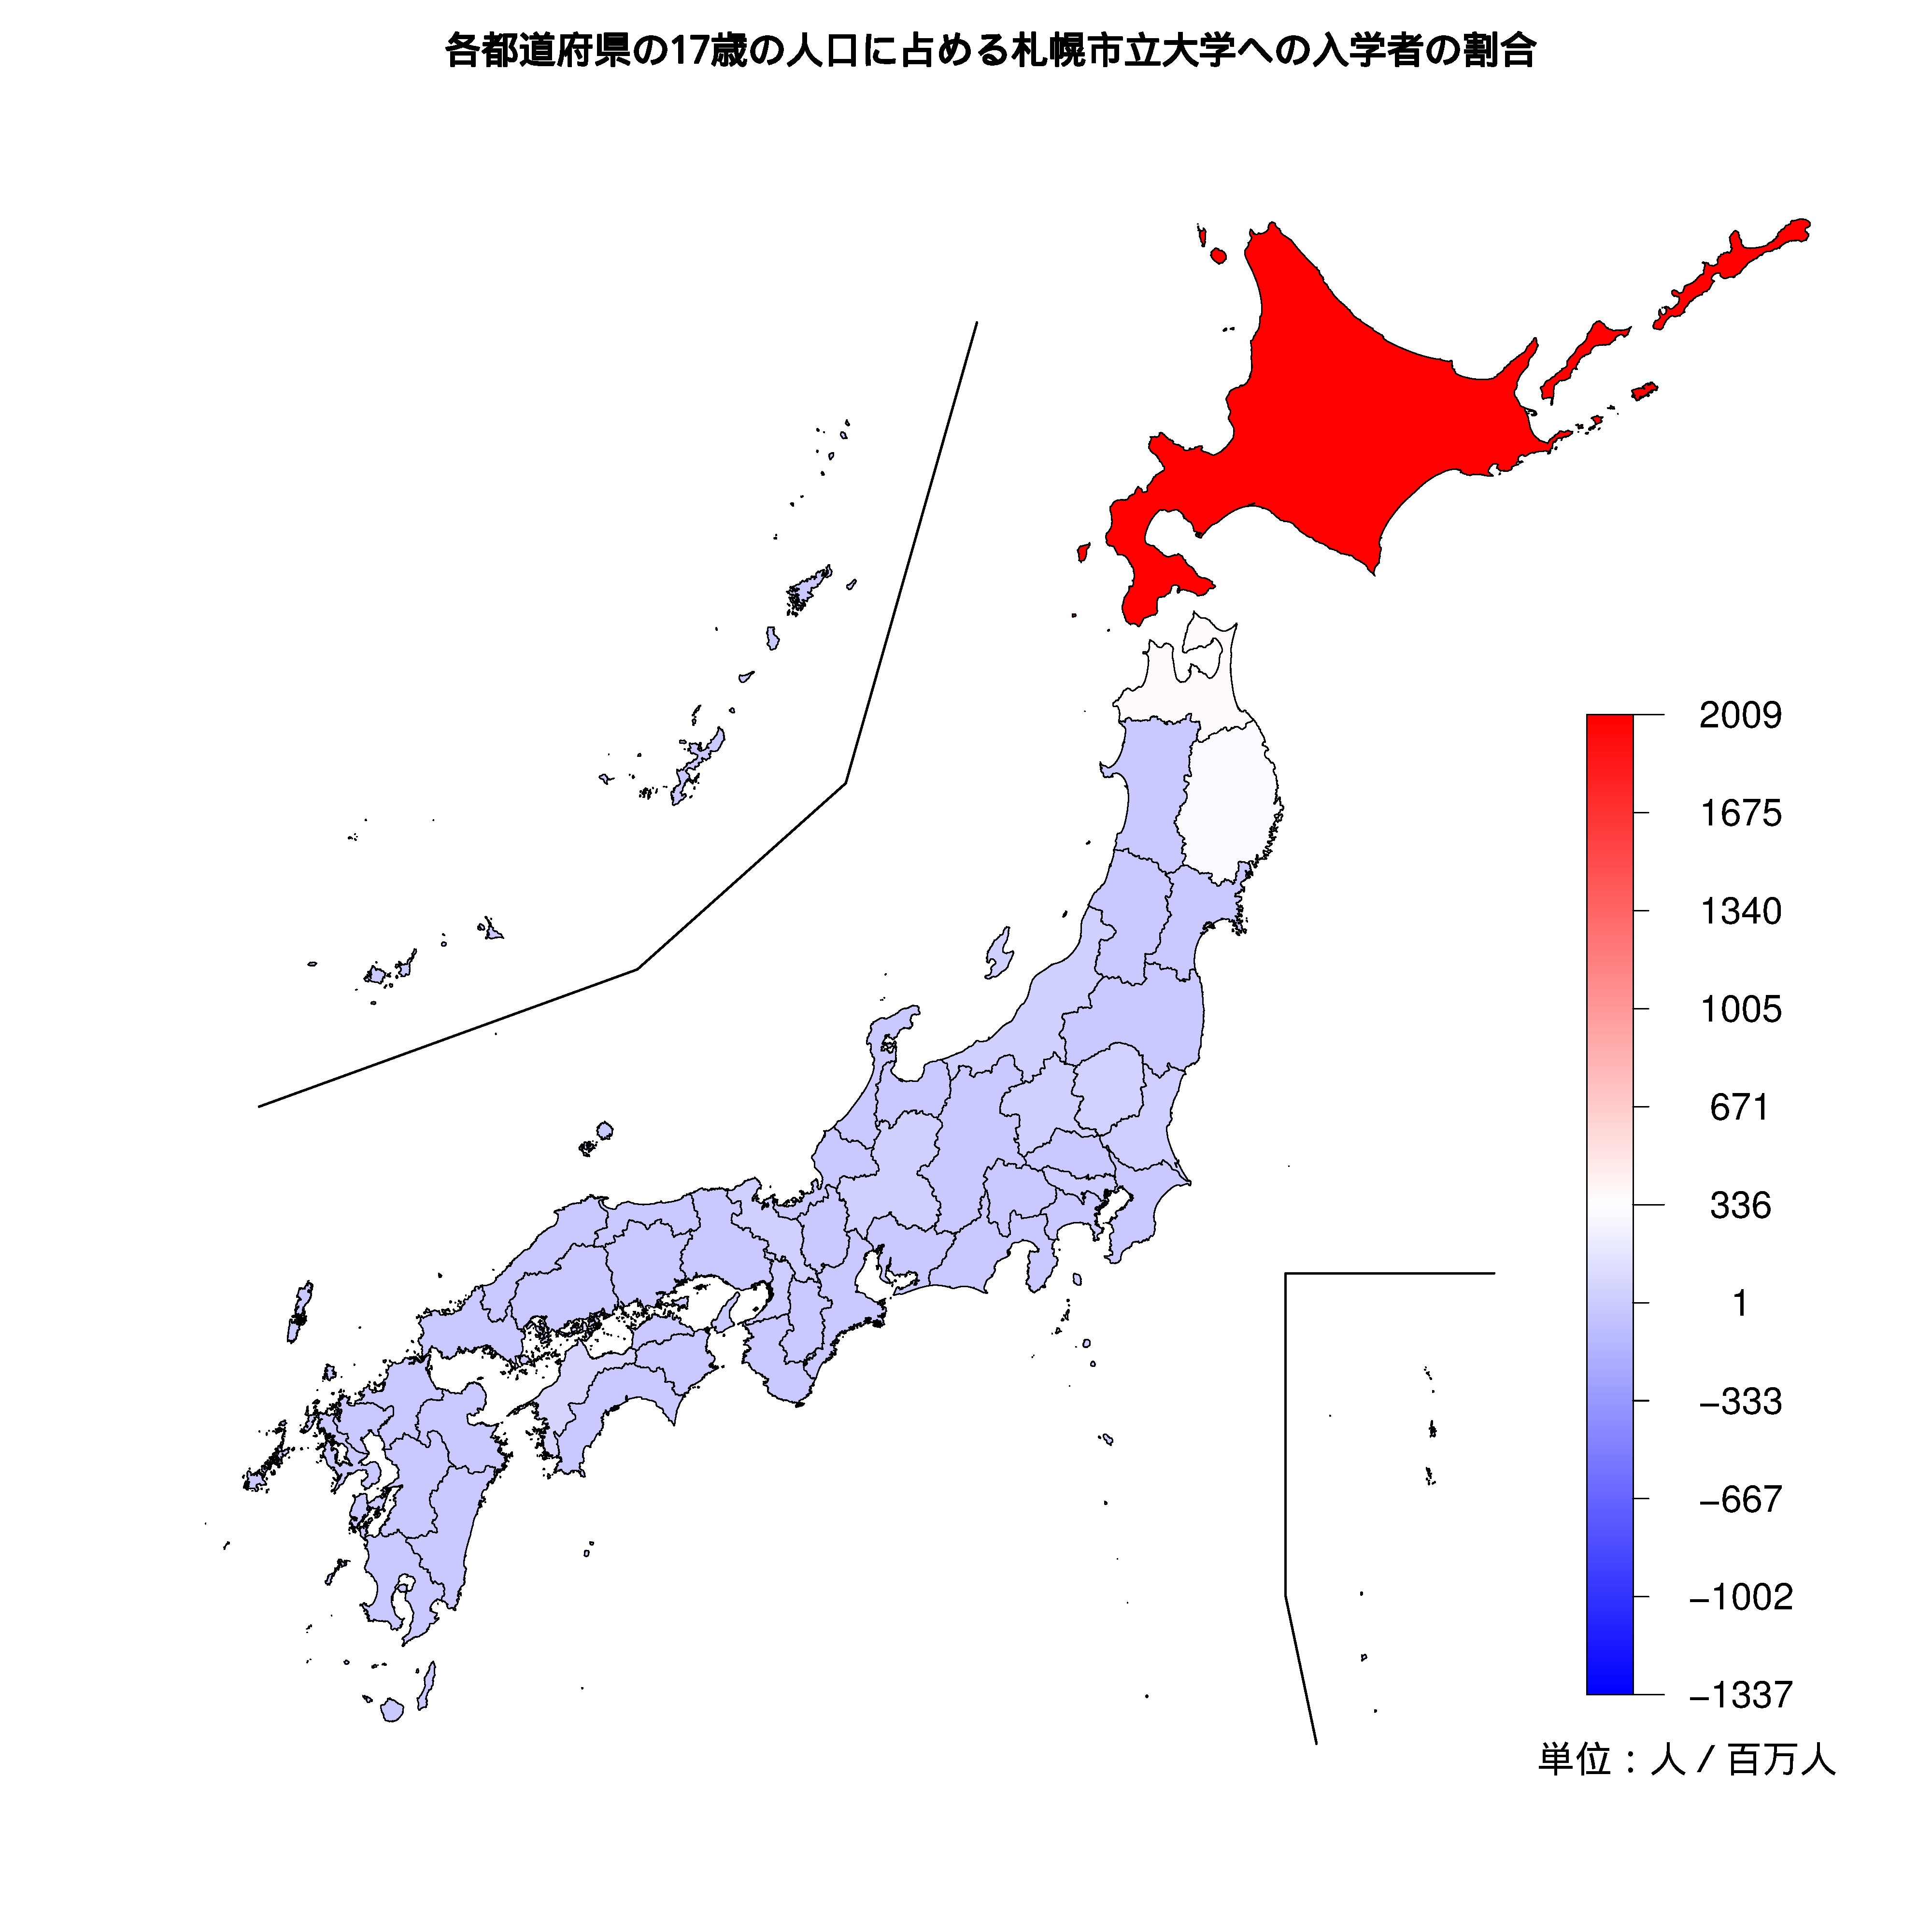 札幌市立大学への入学者が多い都道府県の色分け地図